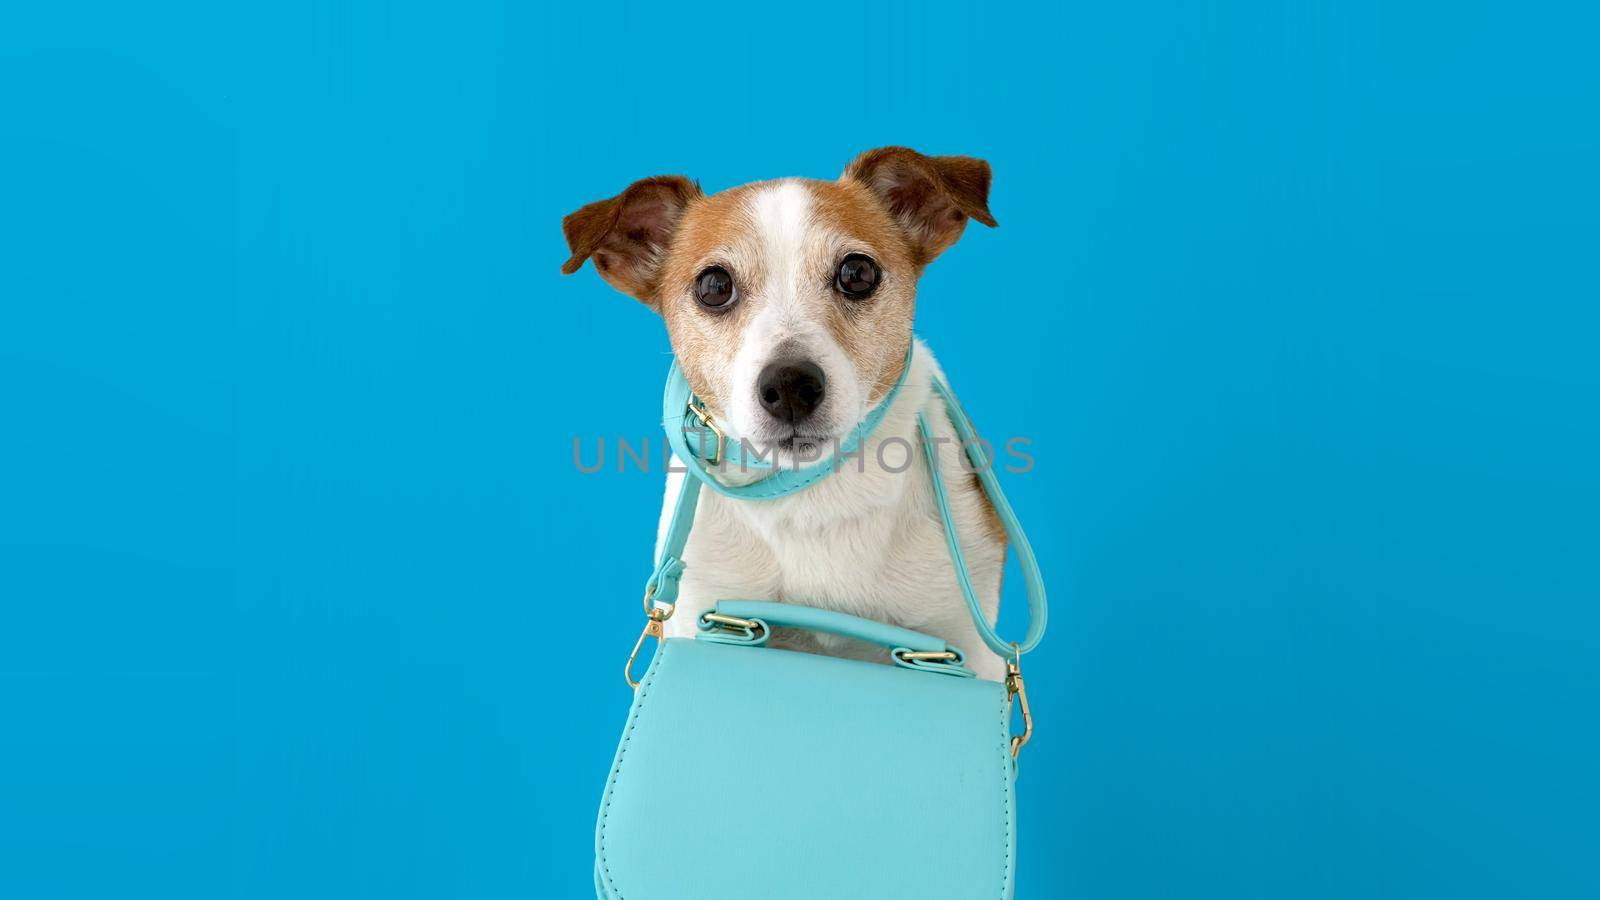 Cute dog with female handbag by Demkat